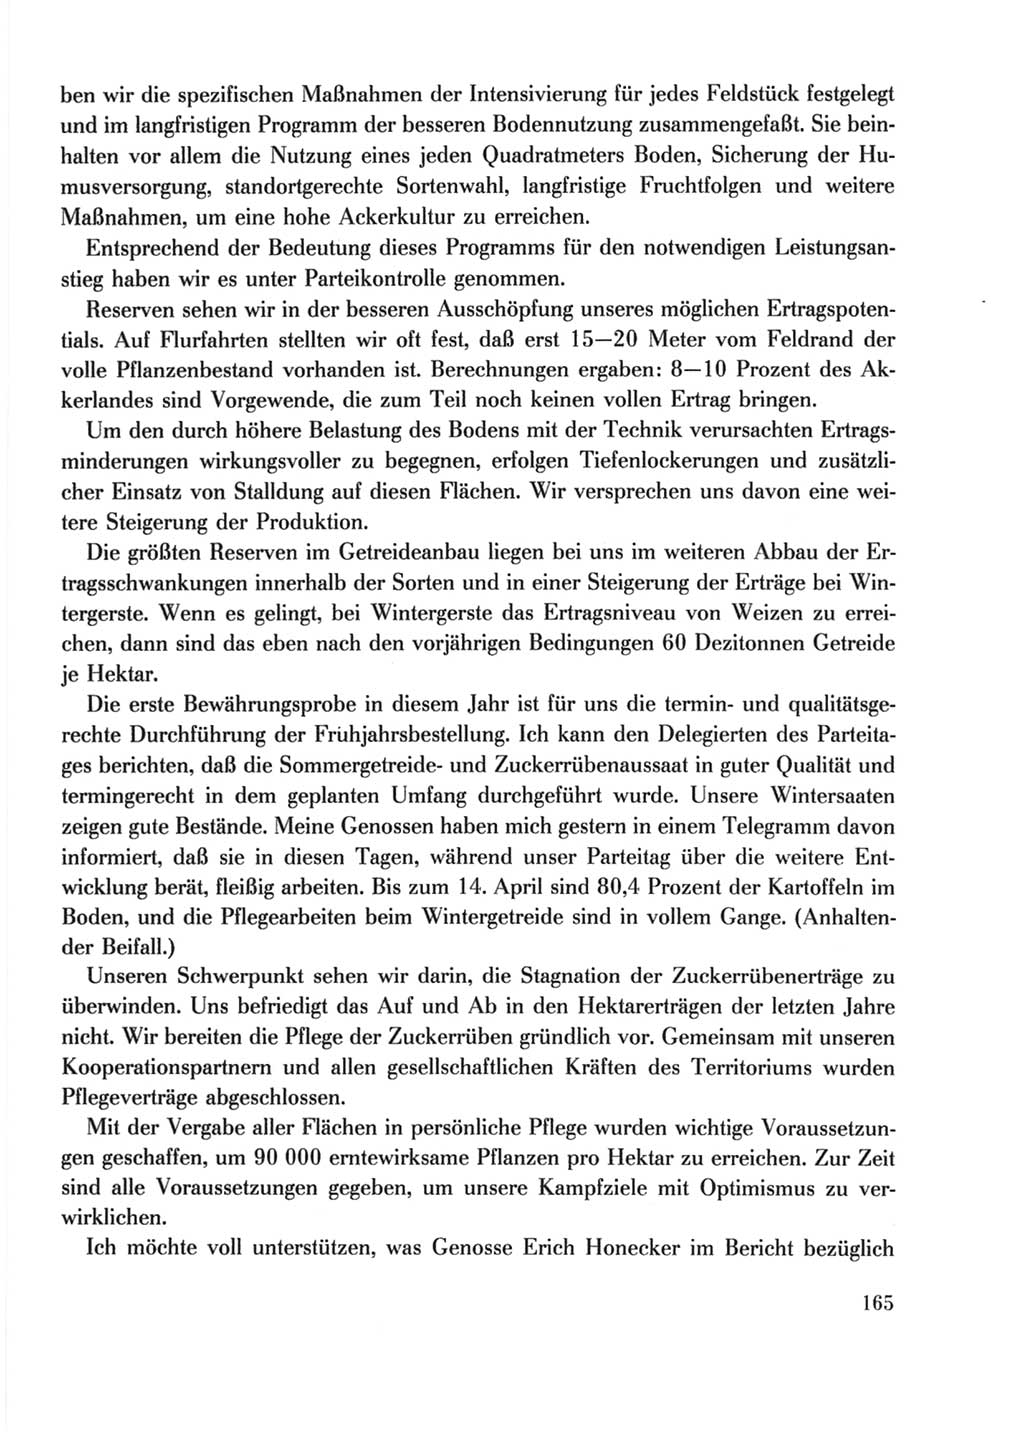 Protokoll der Verhandlungen des Ⅹ. Parteitages der Sozialistischen Einheitspartei Deutschlands (SED) [Deutsche Demokratische Republik (DDR)] 1981, Band 2, Seite 165 (Prot. Verh. Ⅹ. PT SED DDR 1981, Bd. 2, S. 165)